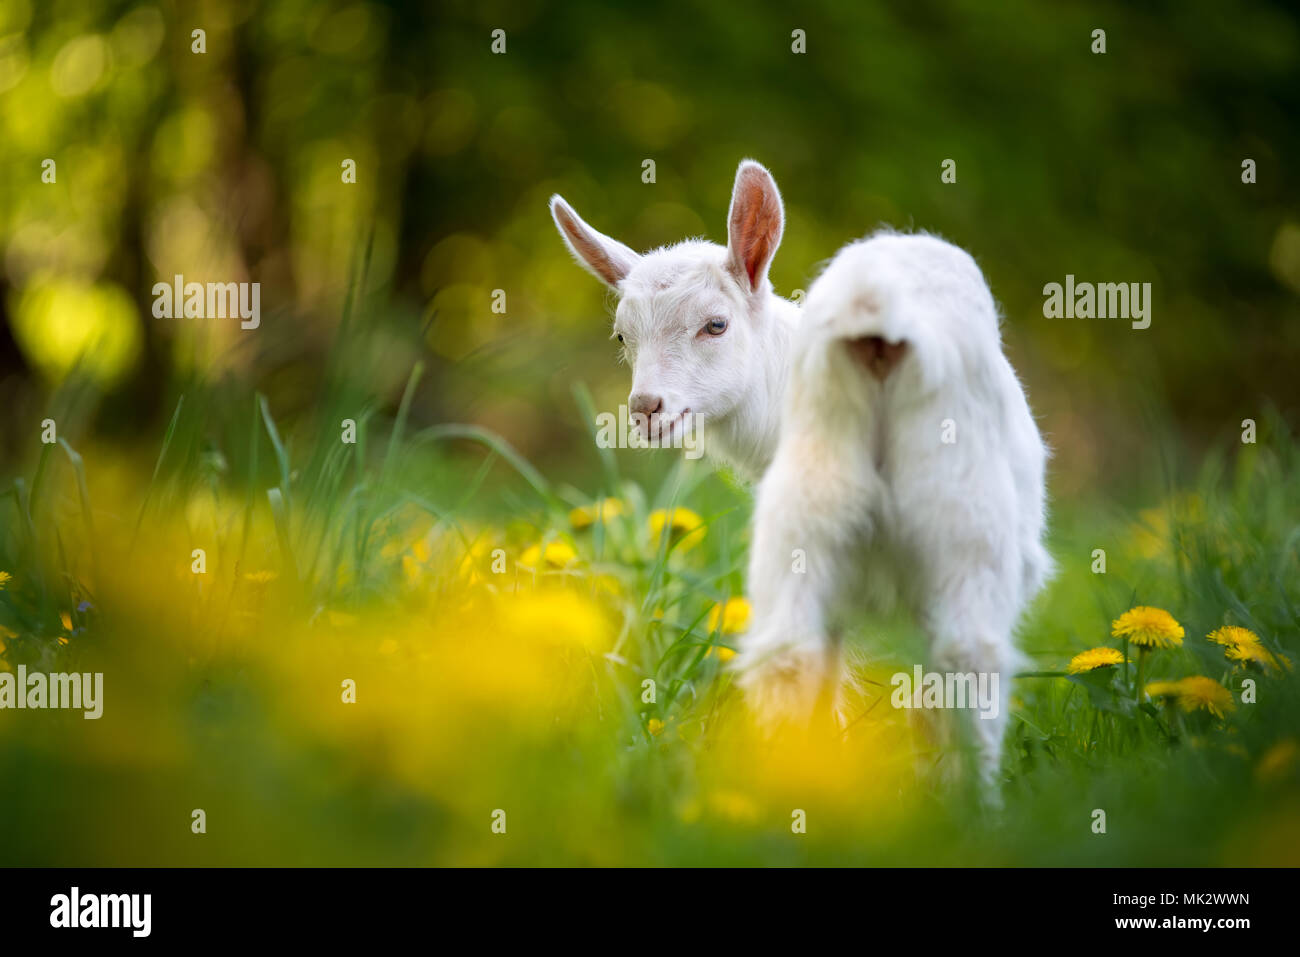 Weiß baby Ziege stehend auf grünem Gras mit gelben Blumen Stockfoto